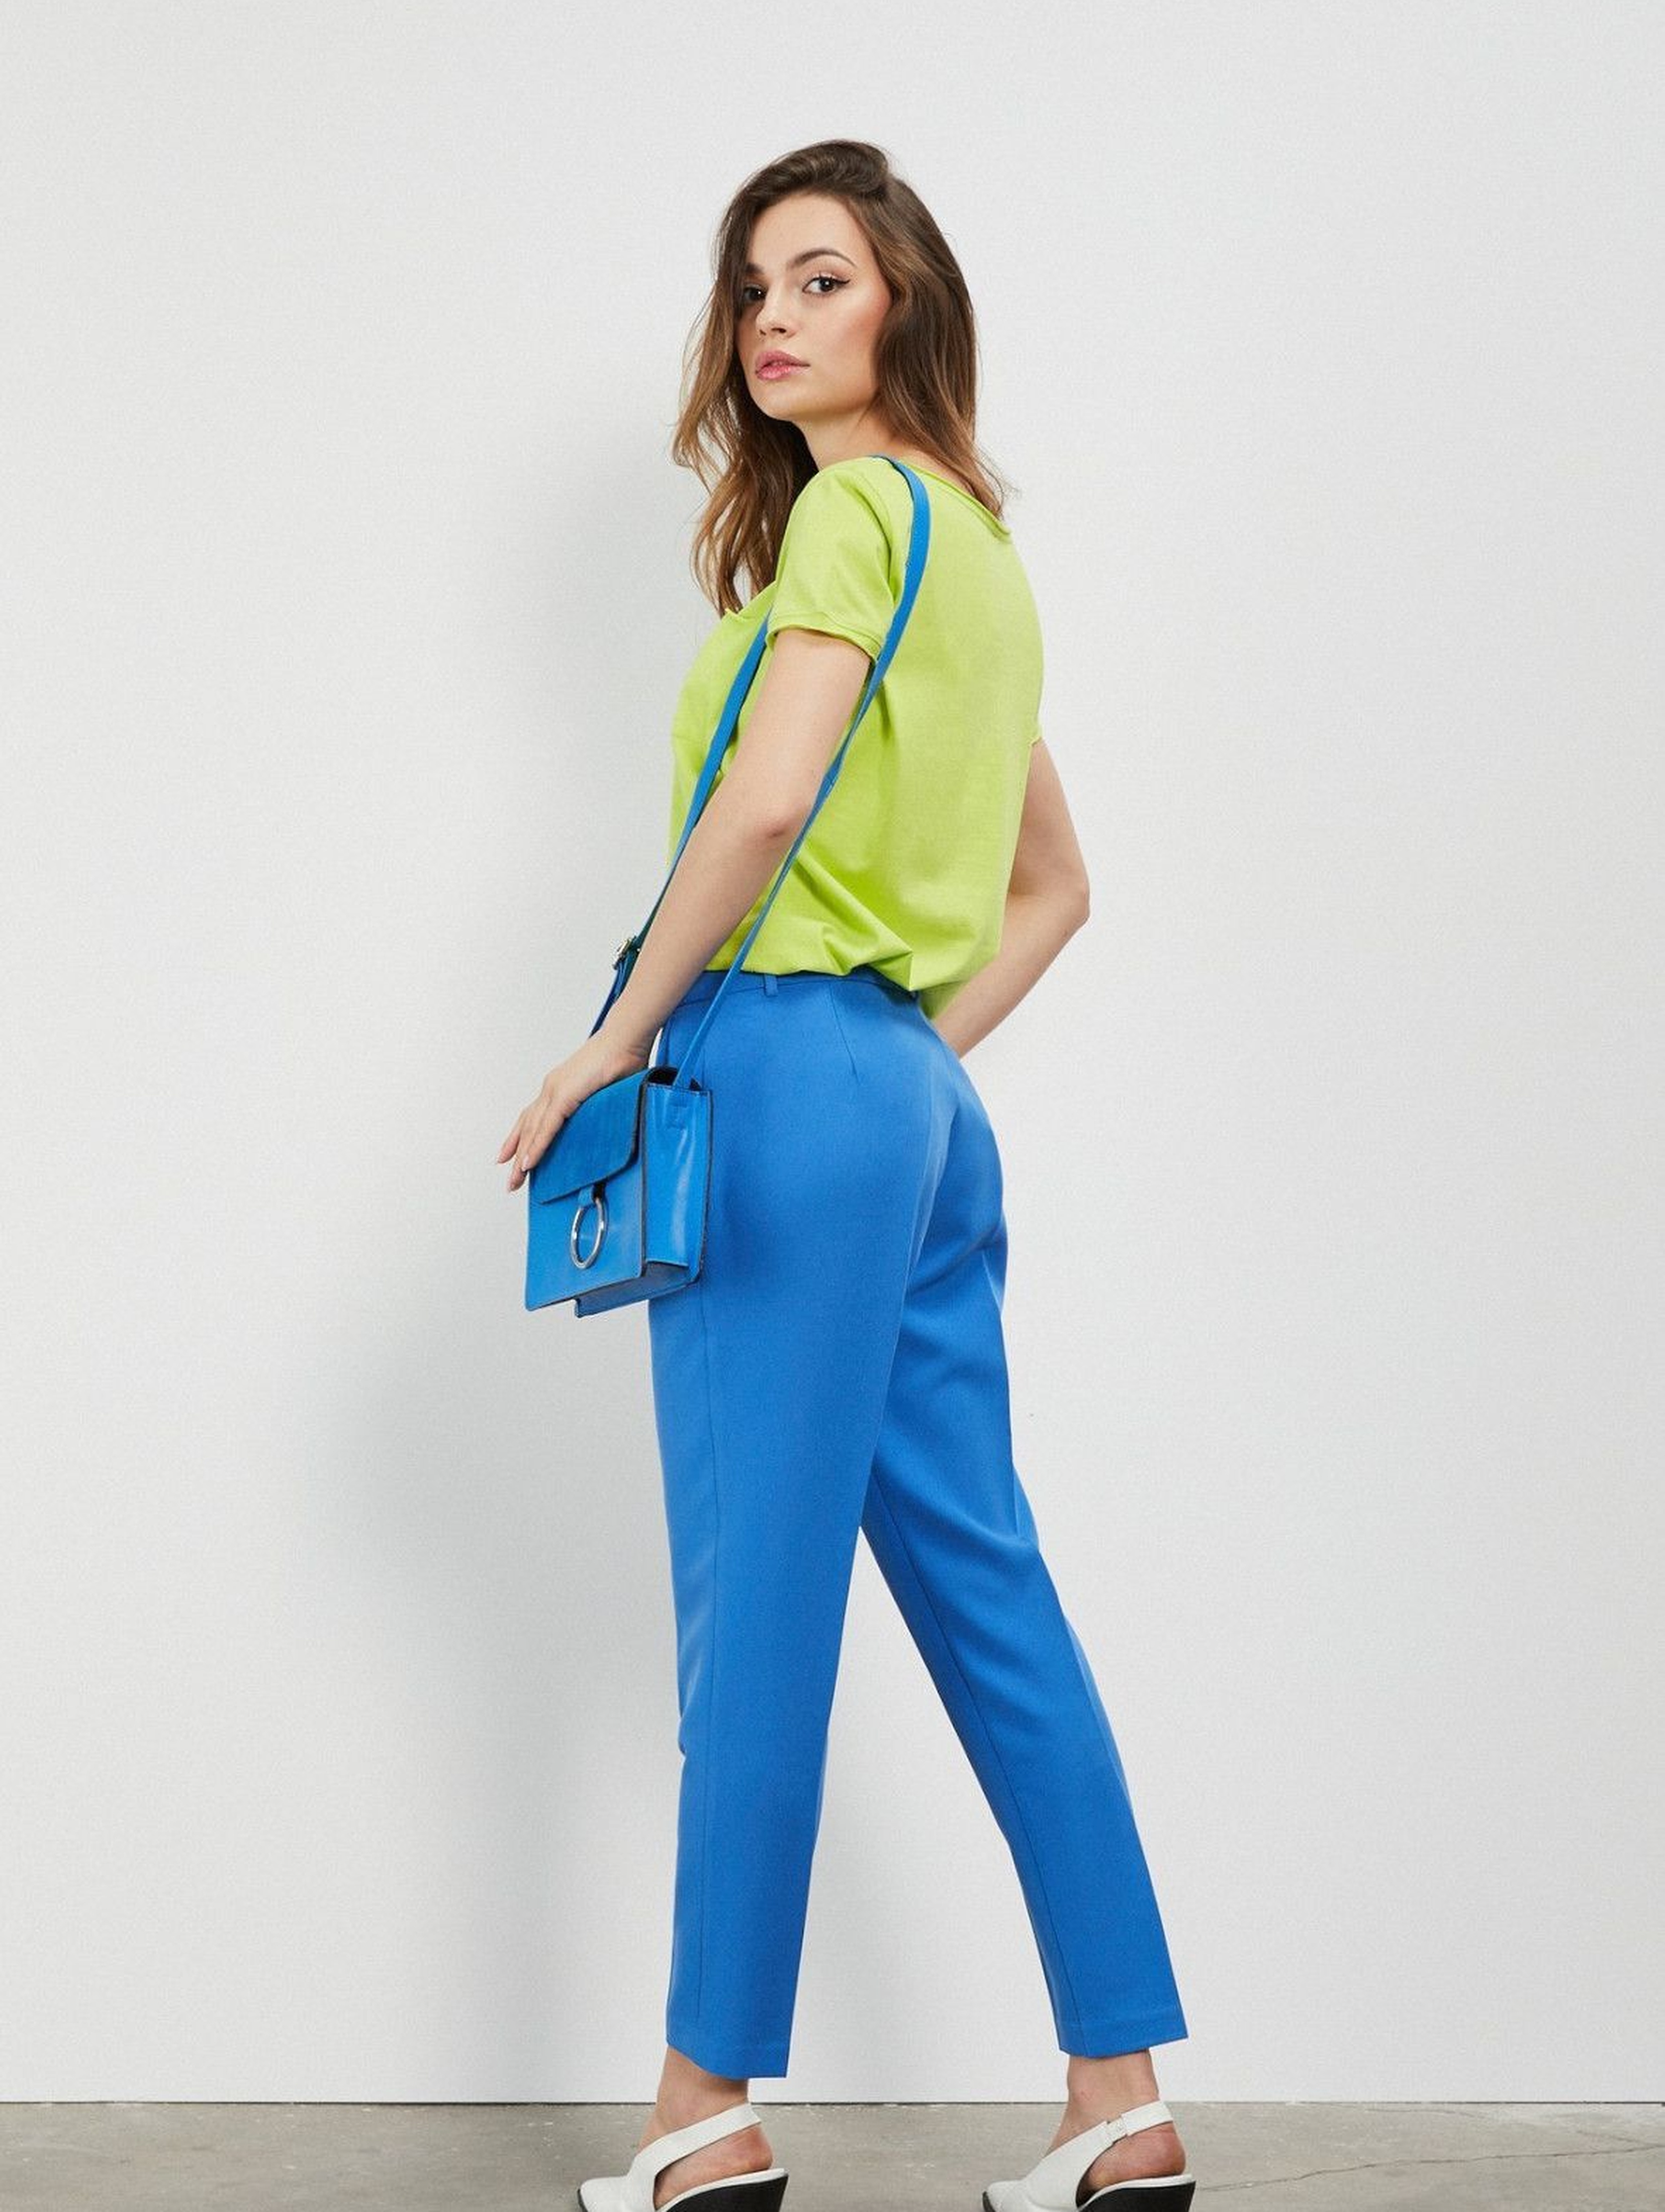 Spodnie damskie niebieskie typu cygaretki